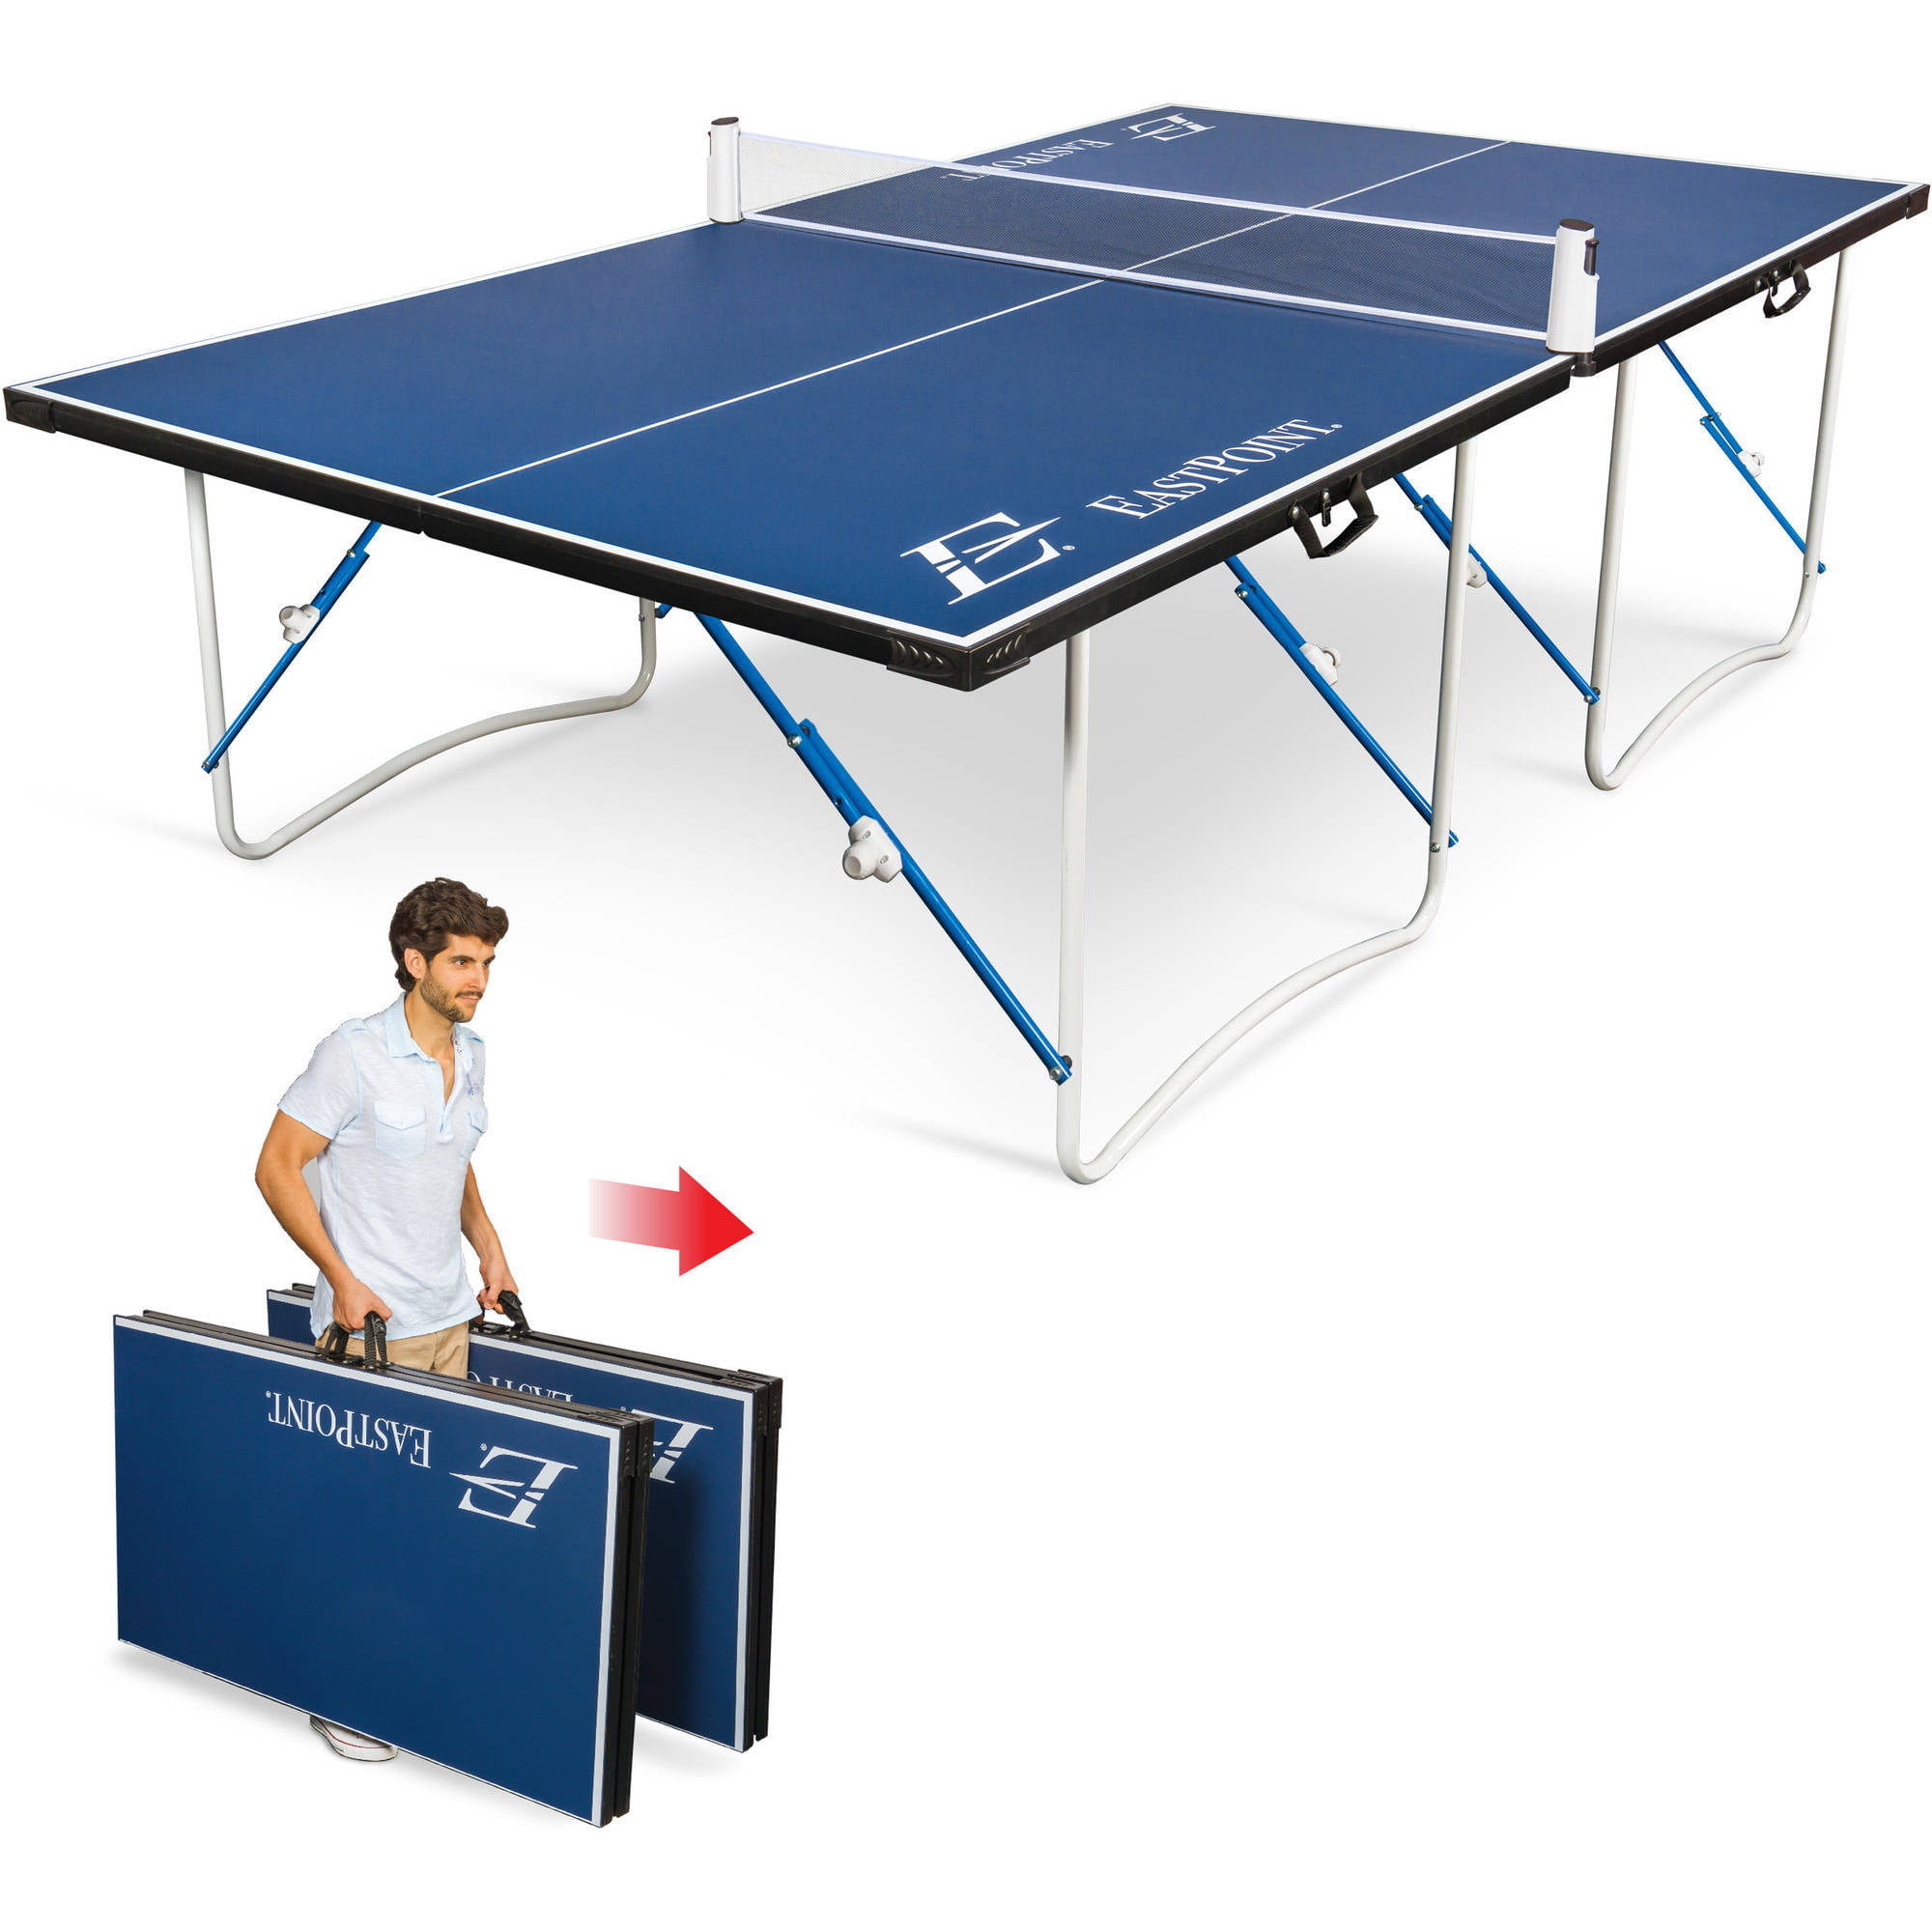 размер поля теннисного стола